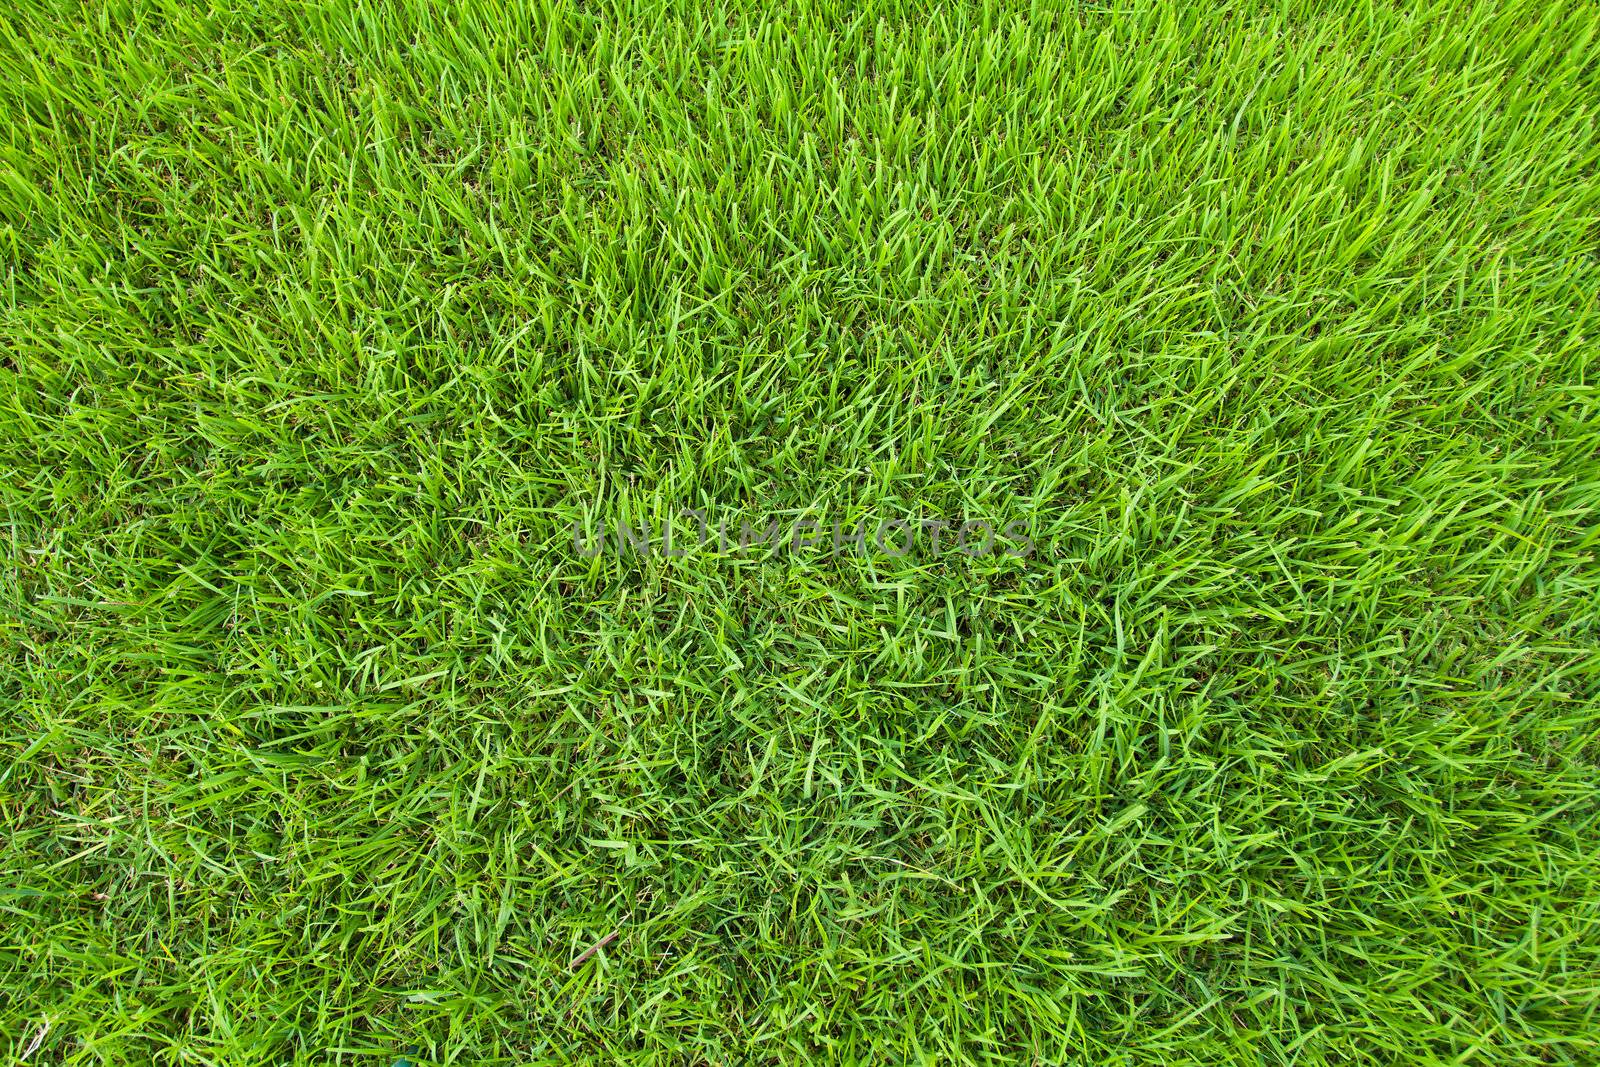 close-up green grass background